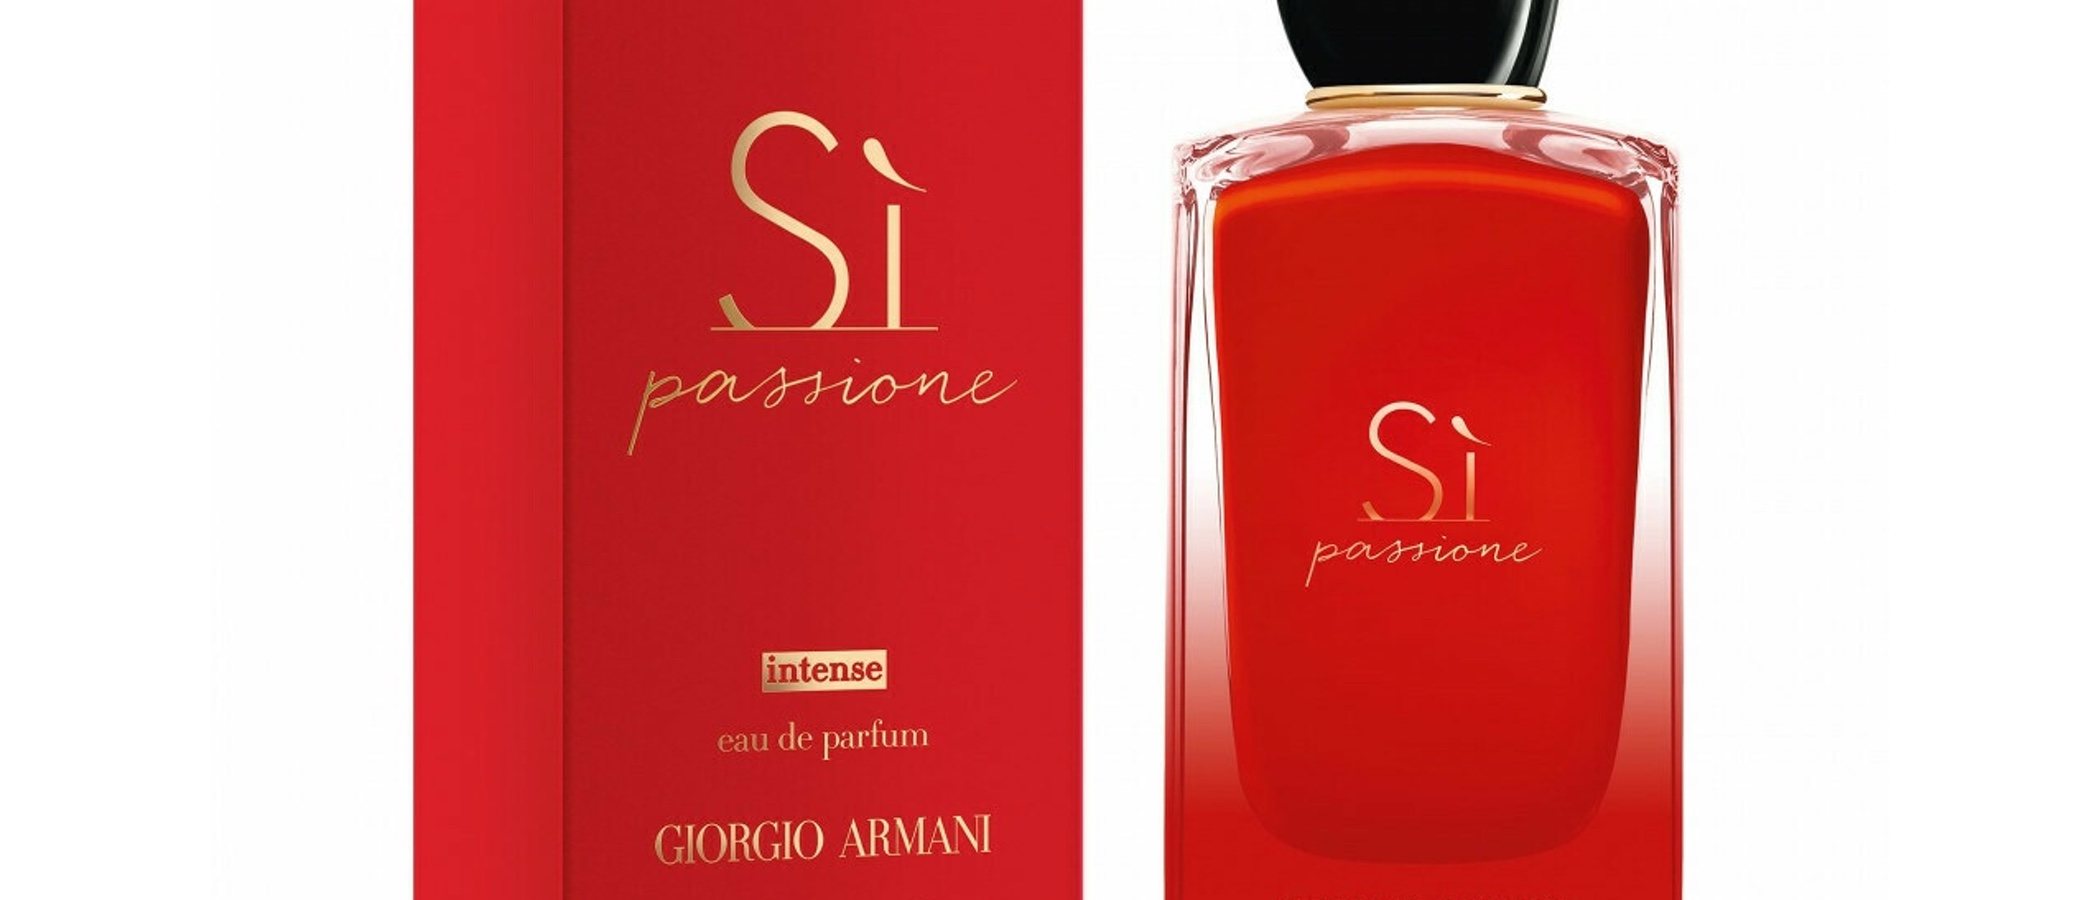 Giorgio Armani lanza la nueva versión de su perfume más exitoso 'Sì Passione Intense'